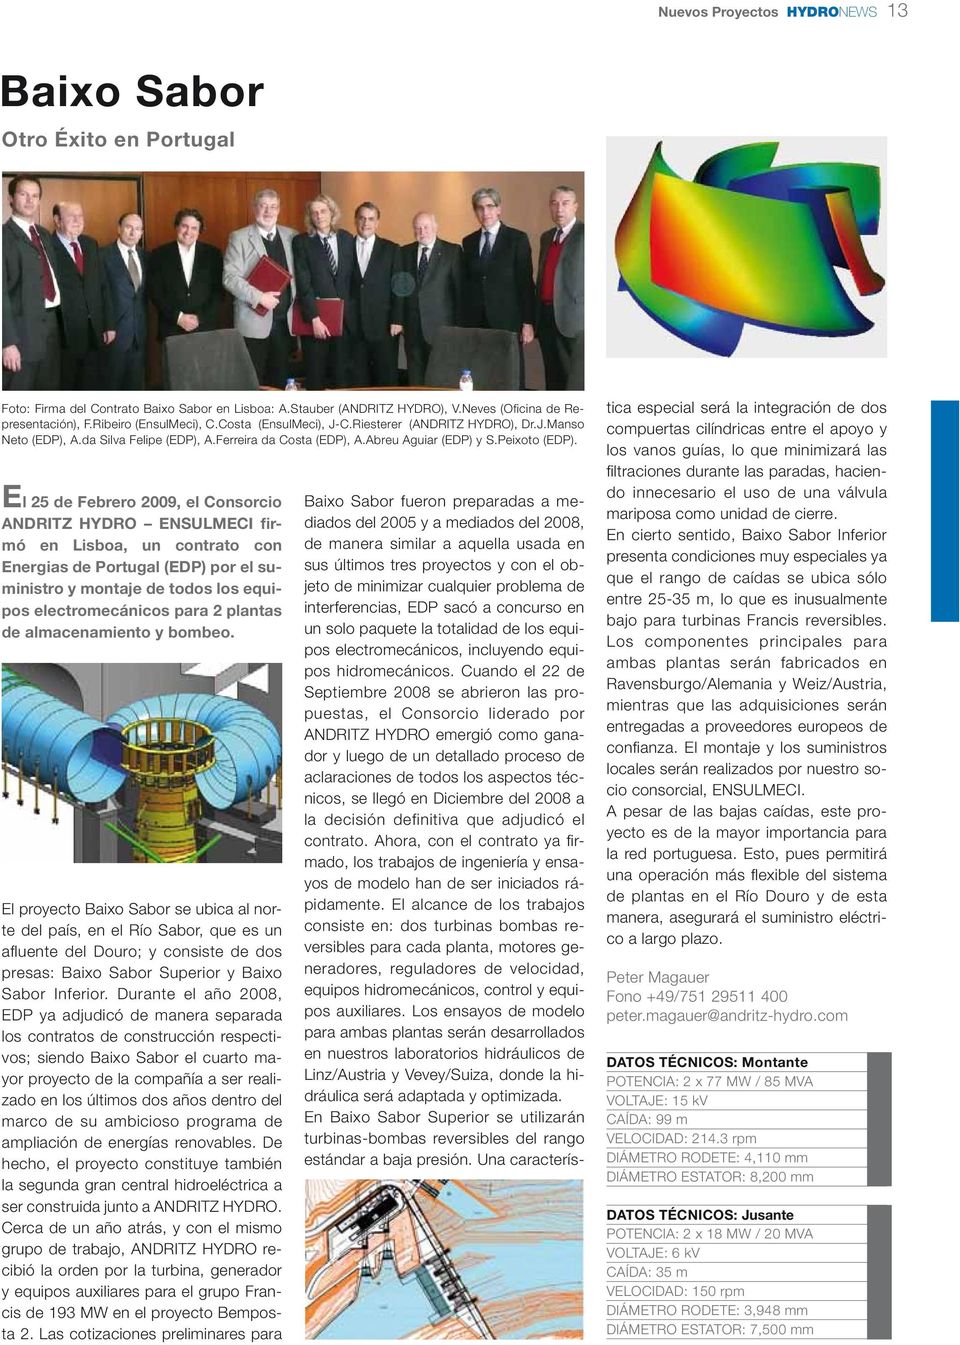 El 25 de Febrero 2009, el Consorcio ANDRITZ HYDRO ENSULMECI firmó en Lisboa, un contrato con Energias de Portugal (EDP) por el suministro y montaje de todos los equipos electromecánicos para 2